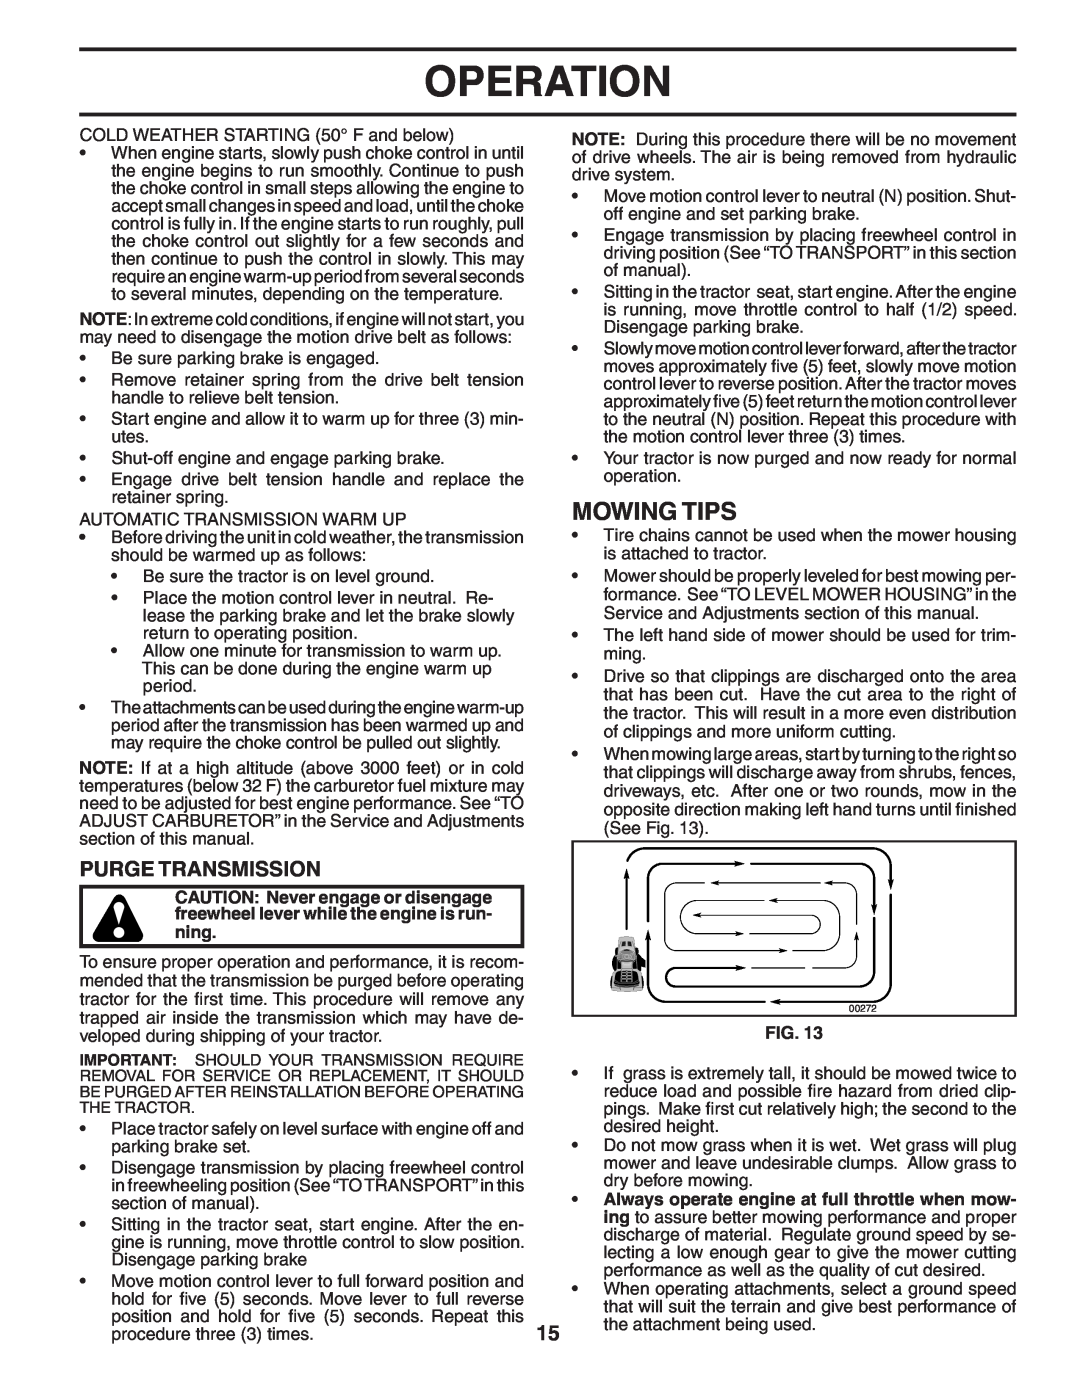 Poulan PBGT27H54 manual Mowing Tips, Purge Transmission, Operation, ning 